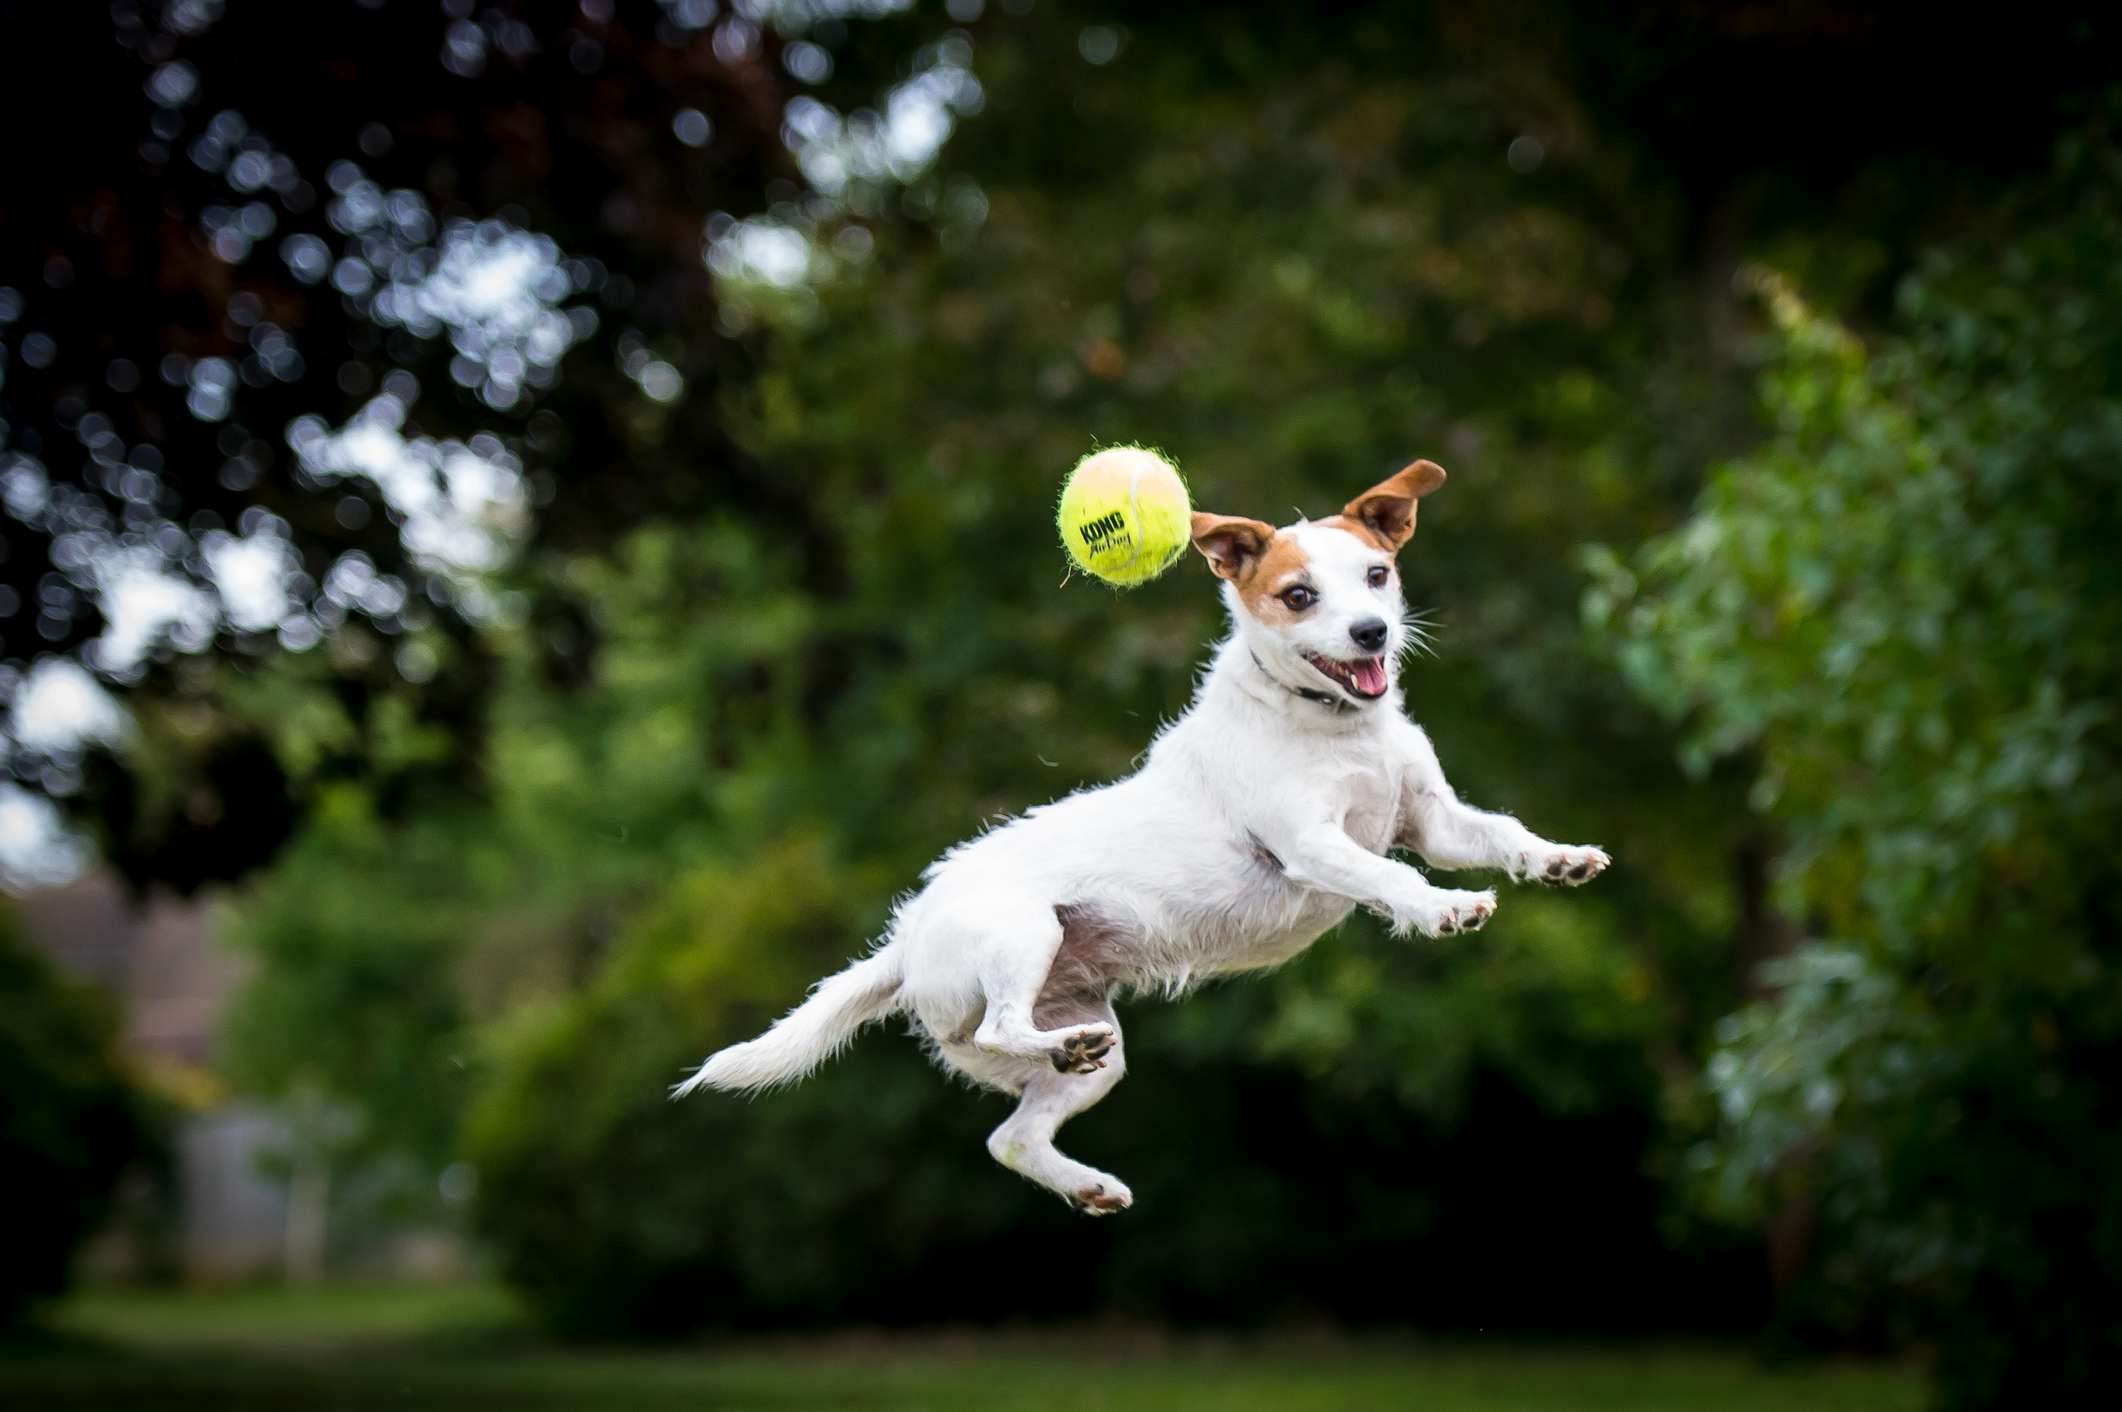 杰克罗素梗犬在空中跳到一个球在公园